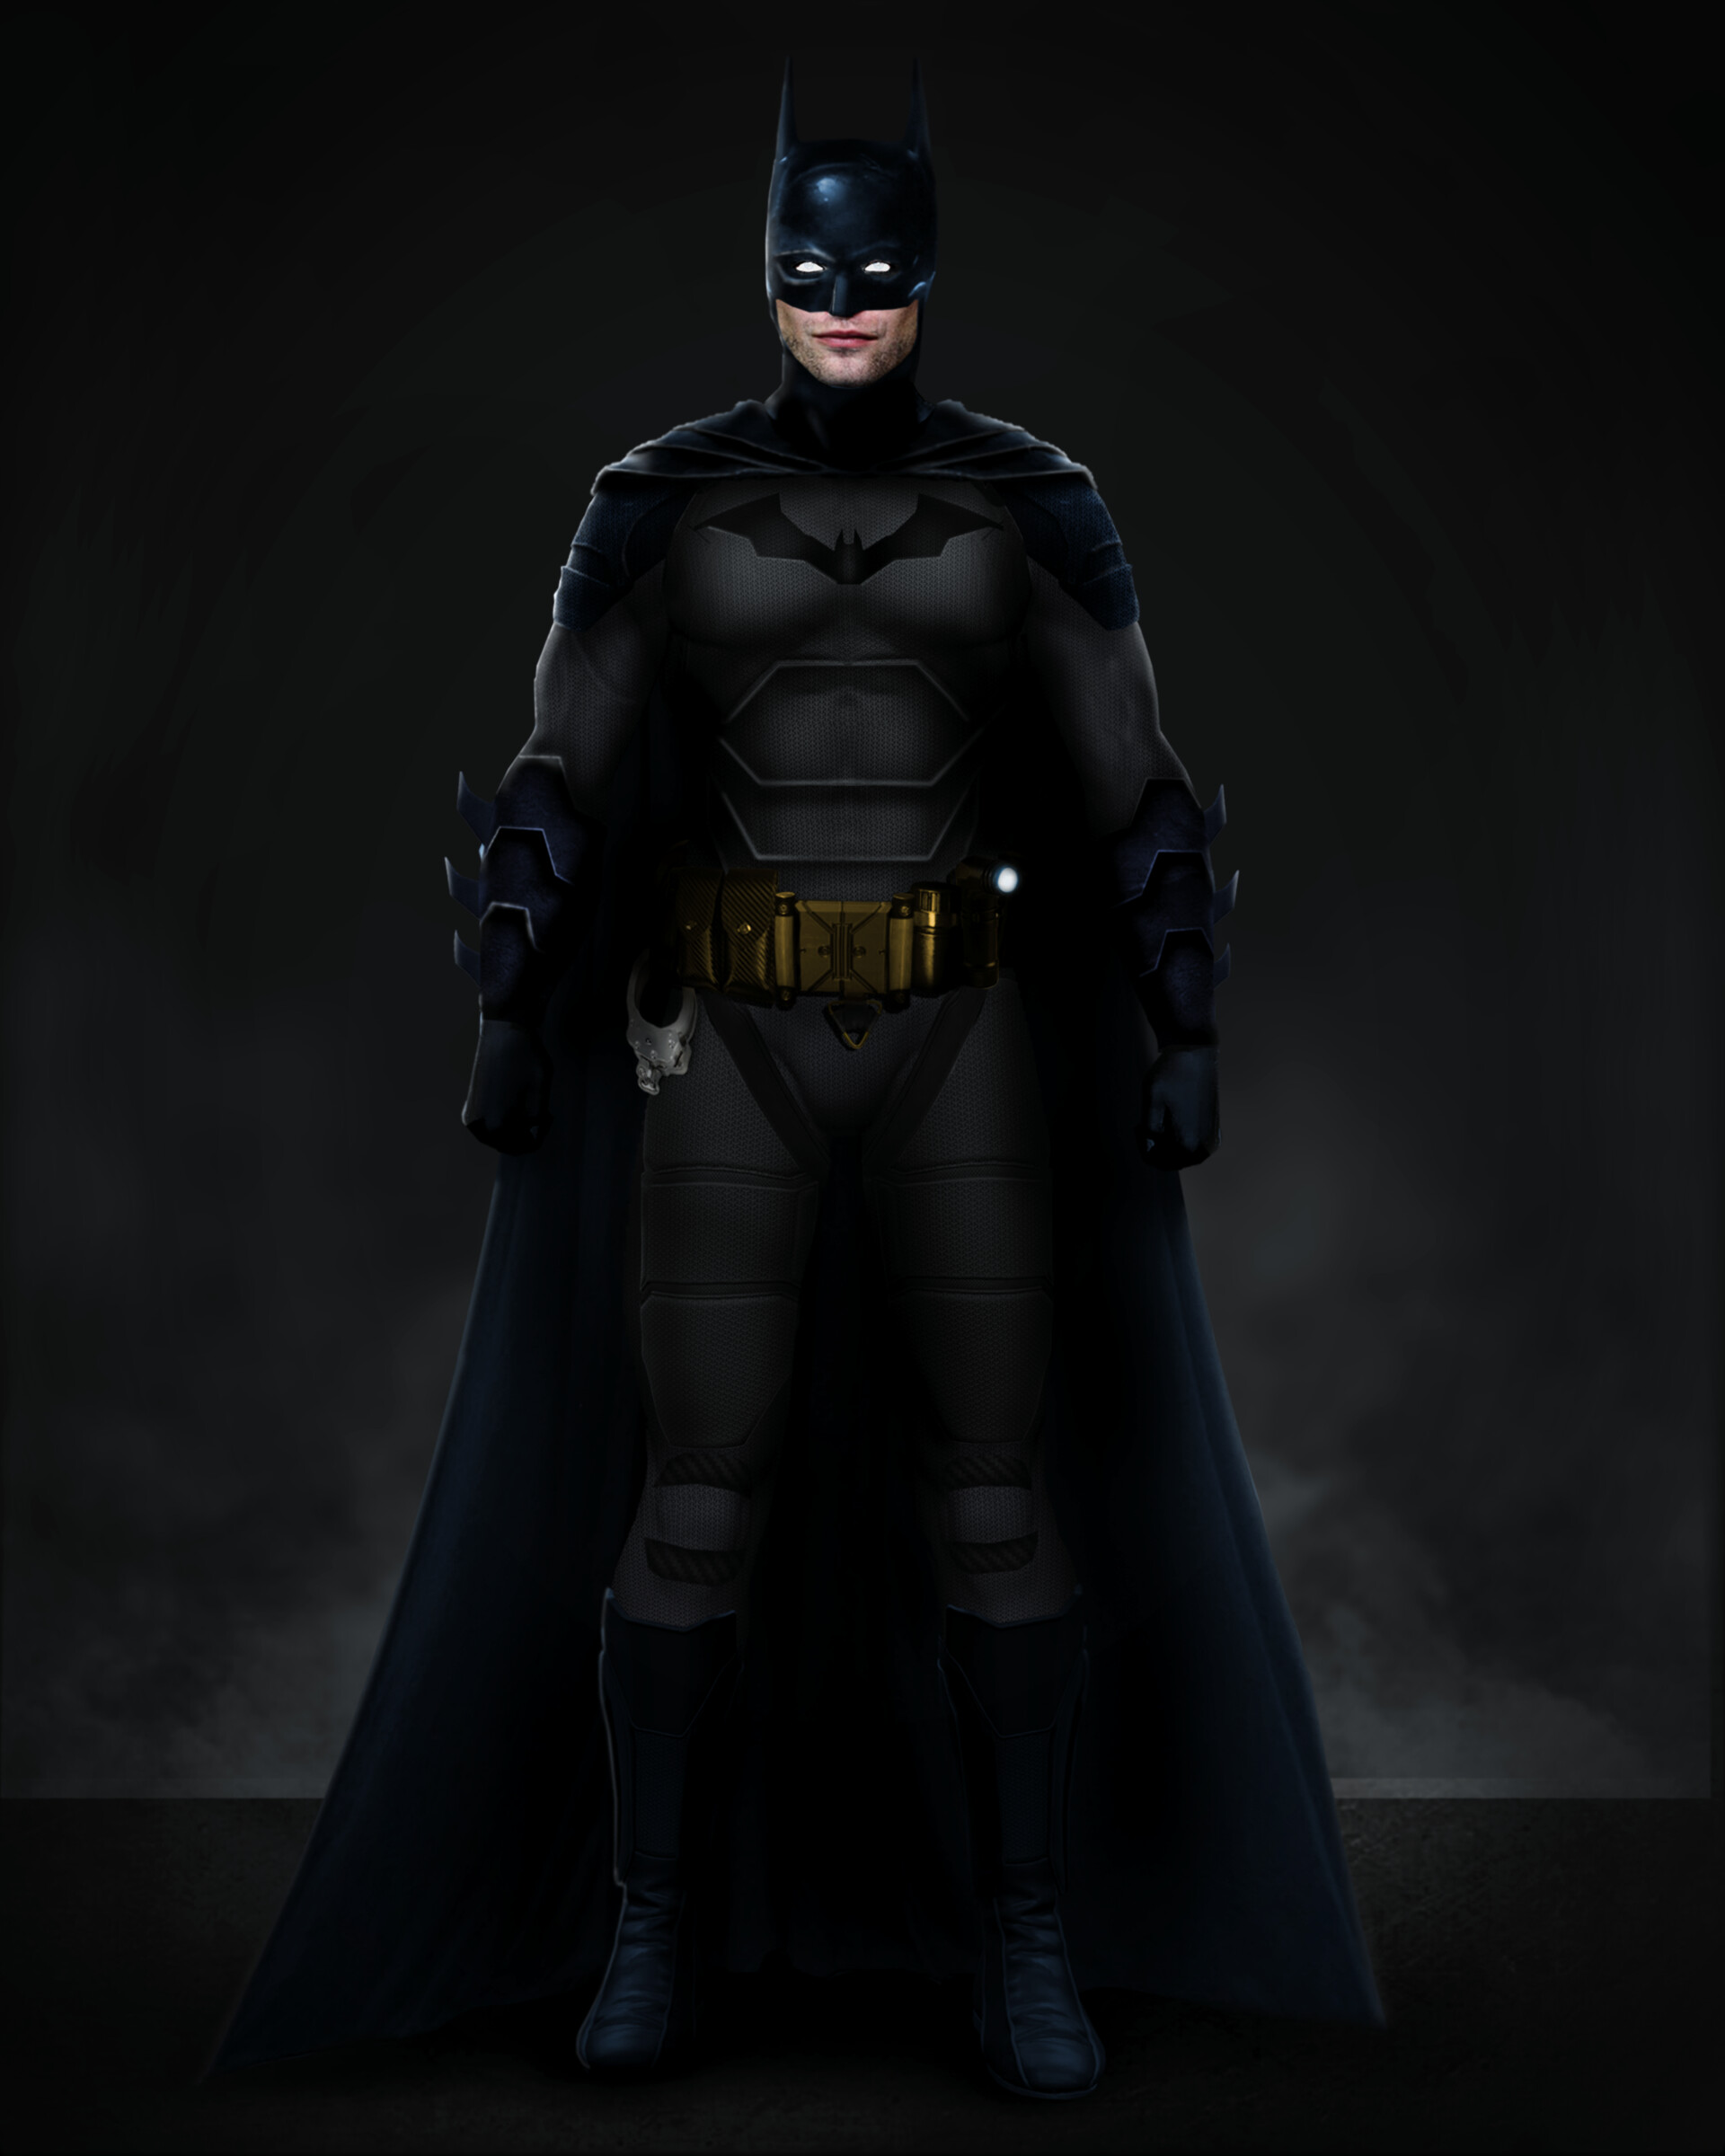 ArtStation - The Batman Suit V2 Concept Art